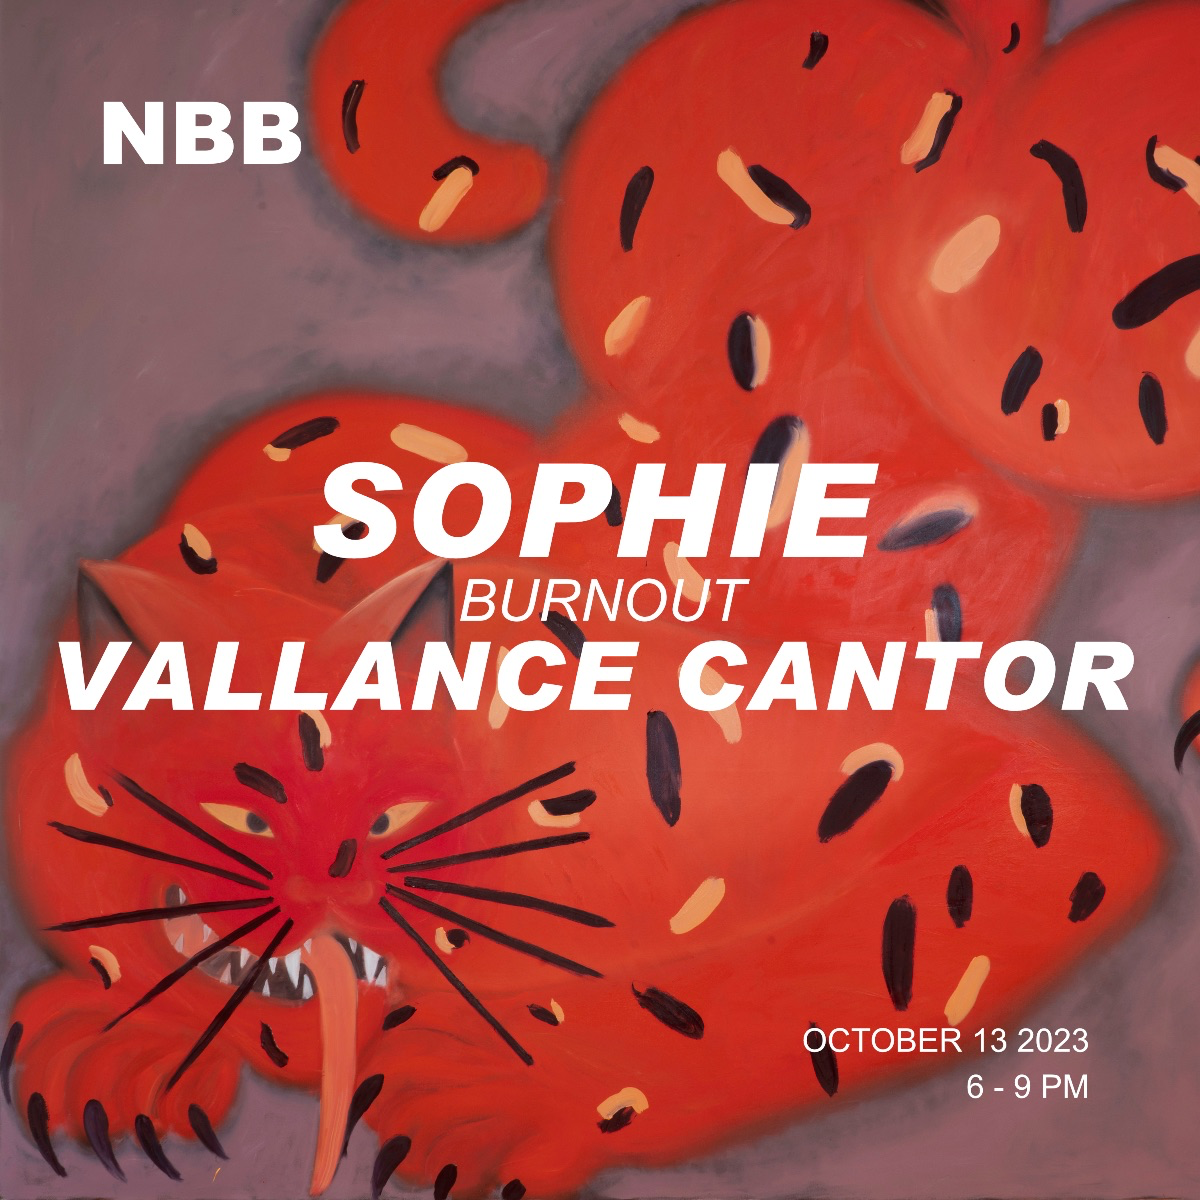 Sophie Vallance Cantor, Miriam Beichert